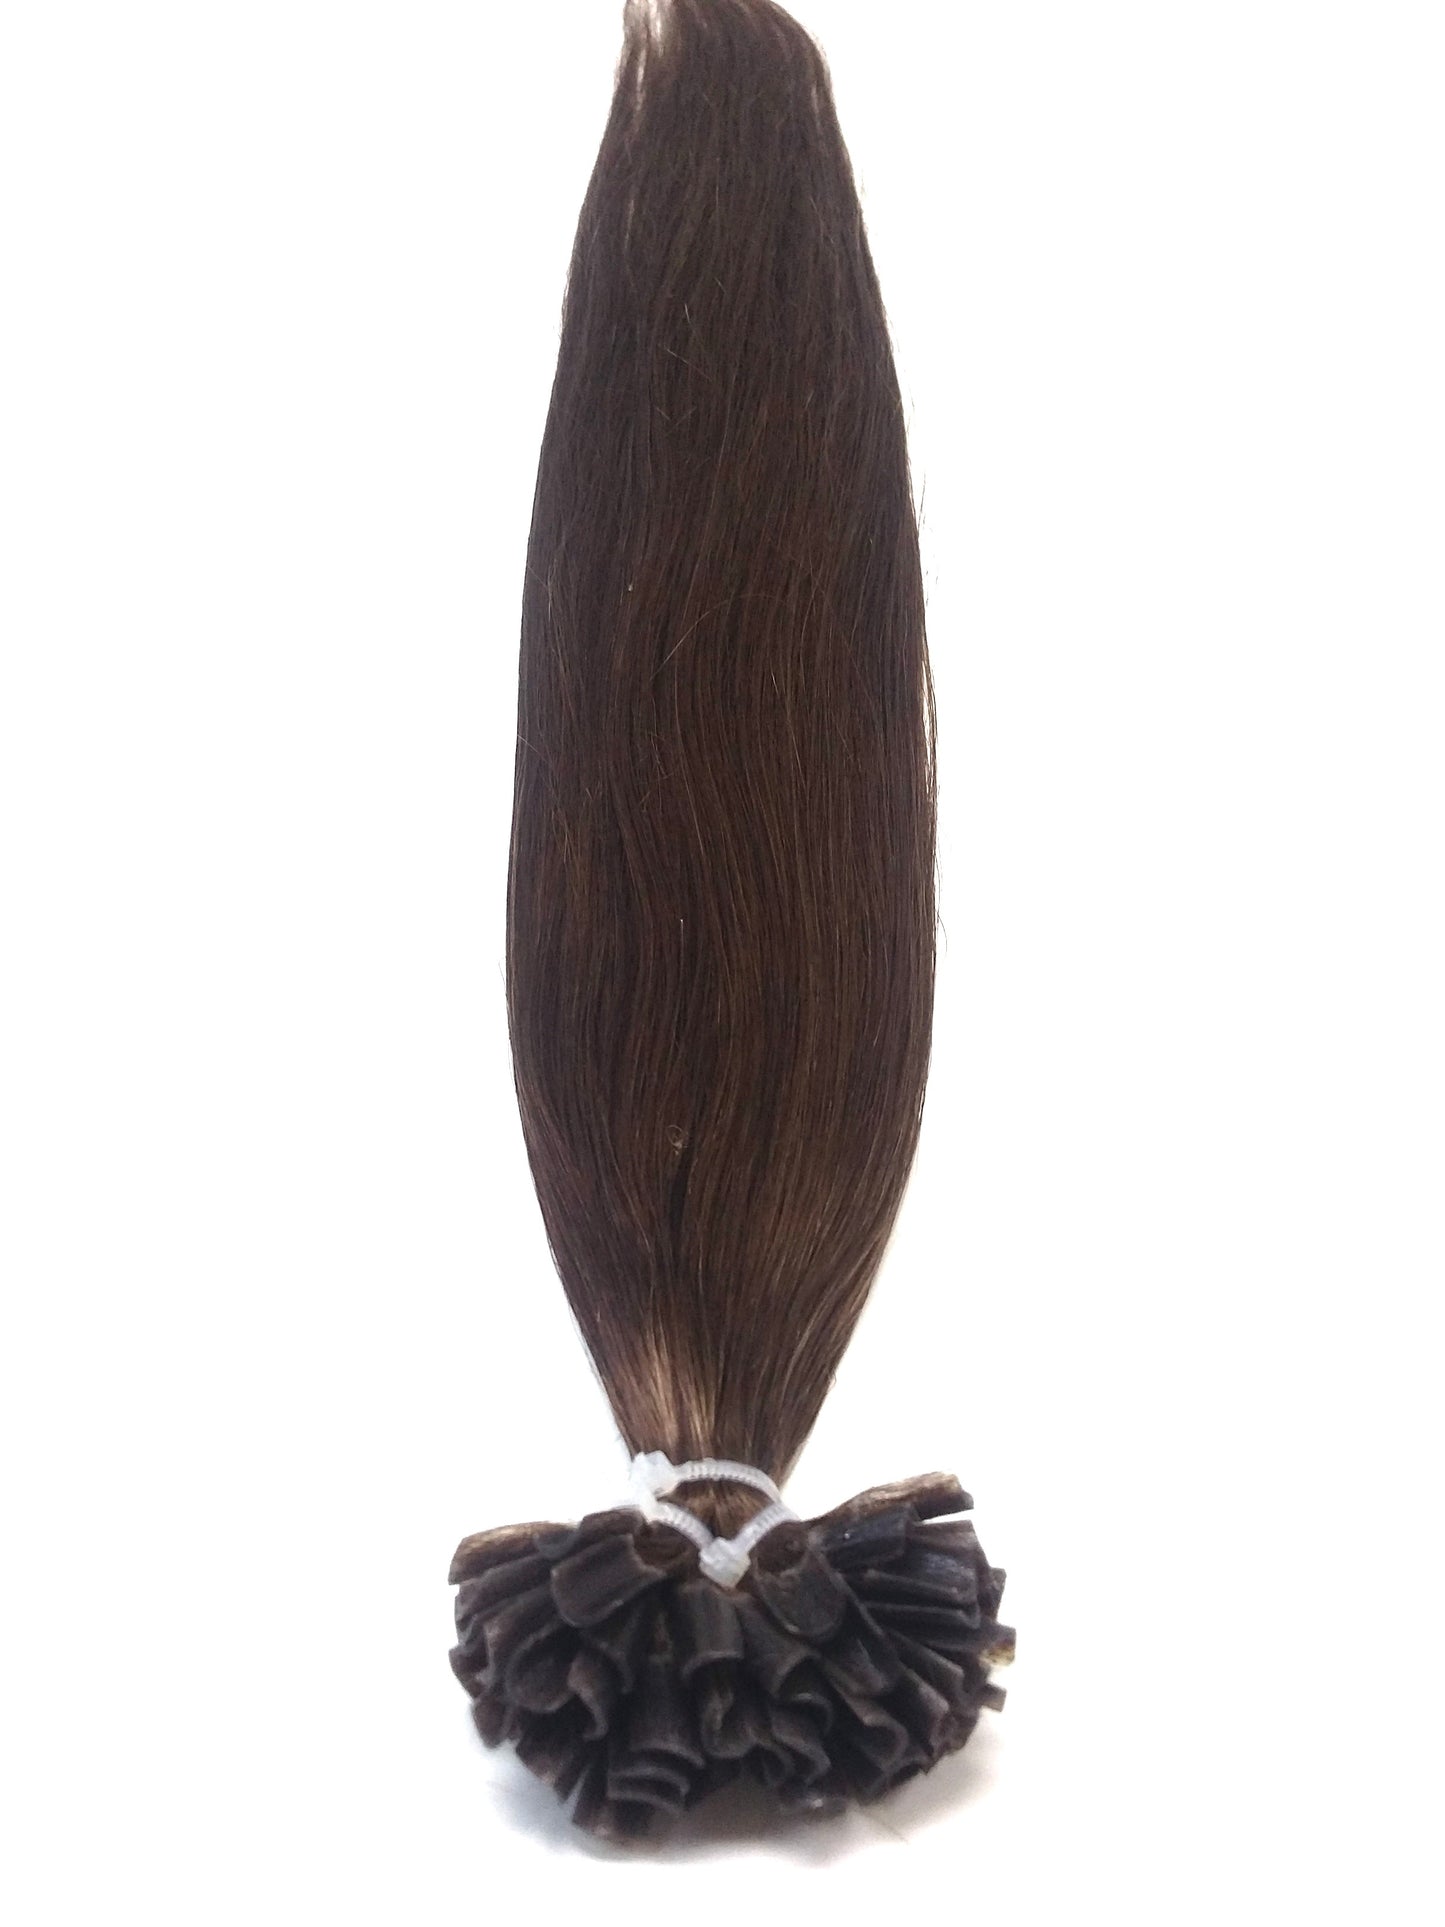 שיער אנושי רמי רוסי, 1 גרם אוטיפים, חלק, 24'', צבע 4, 50 גרם, משלוח מהיר!